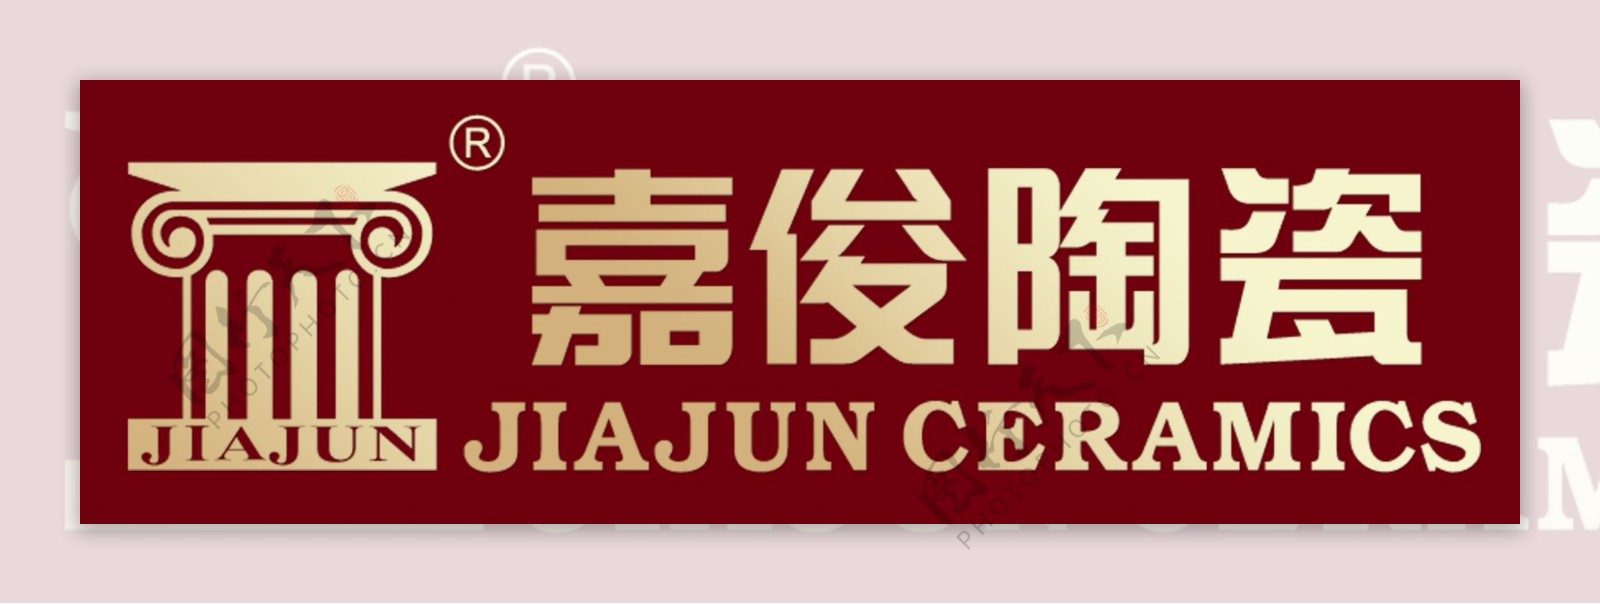 嘉俊陶瓷logo图片